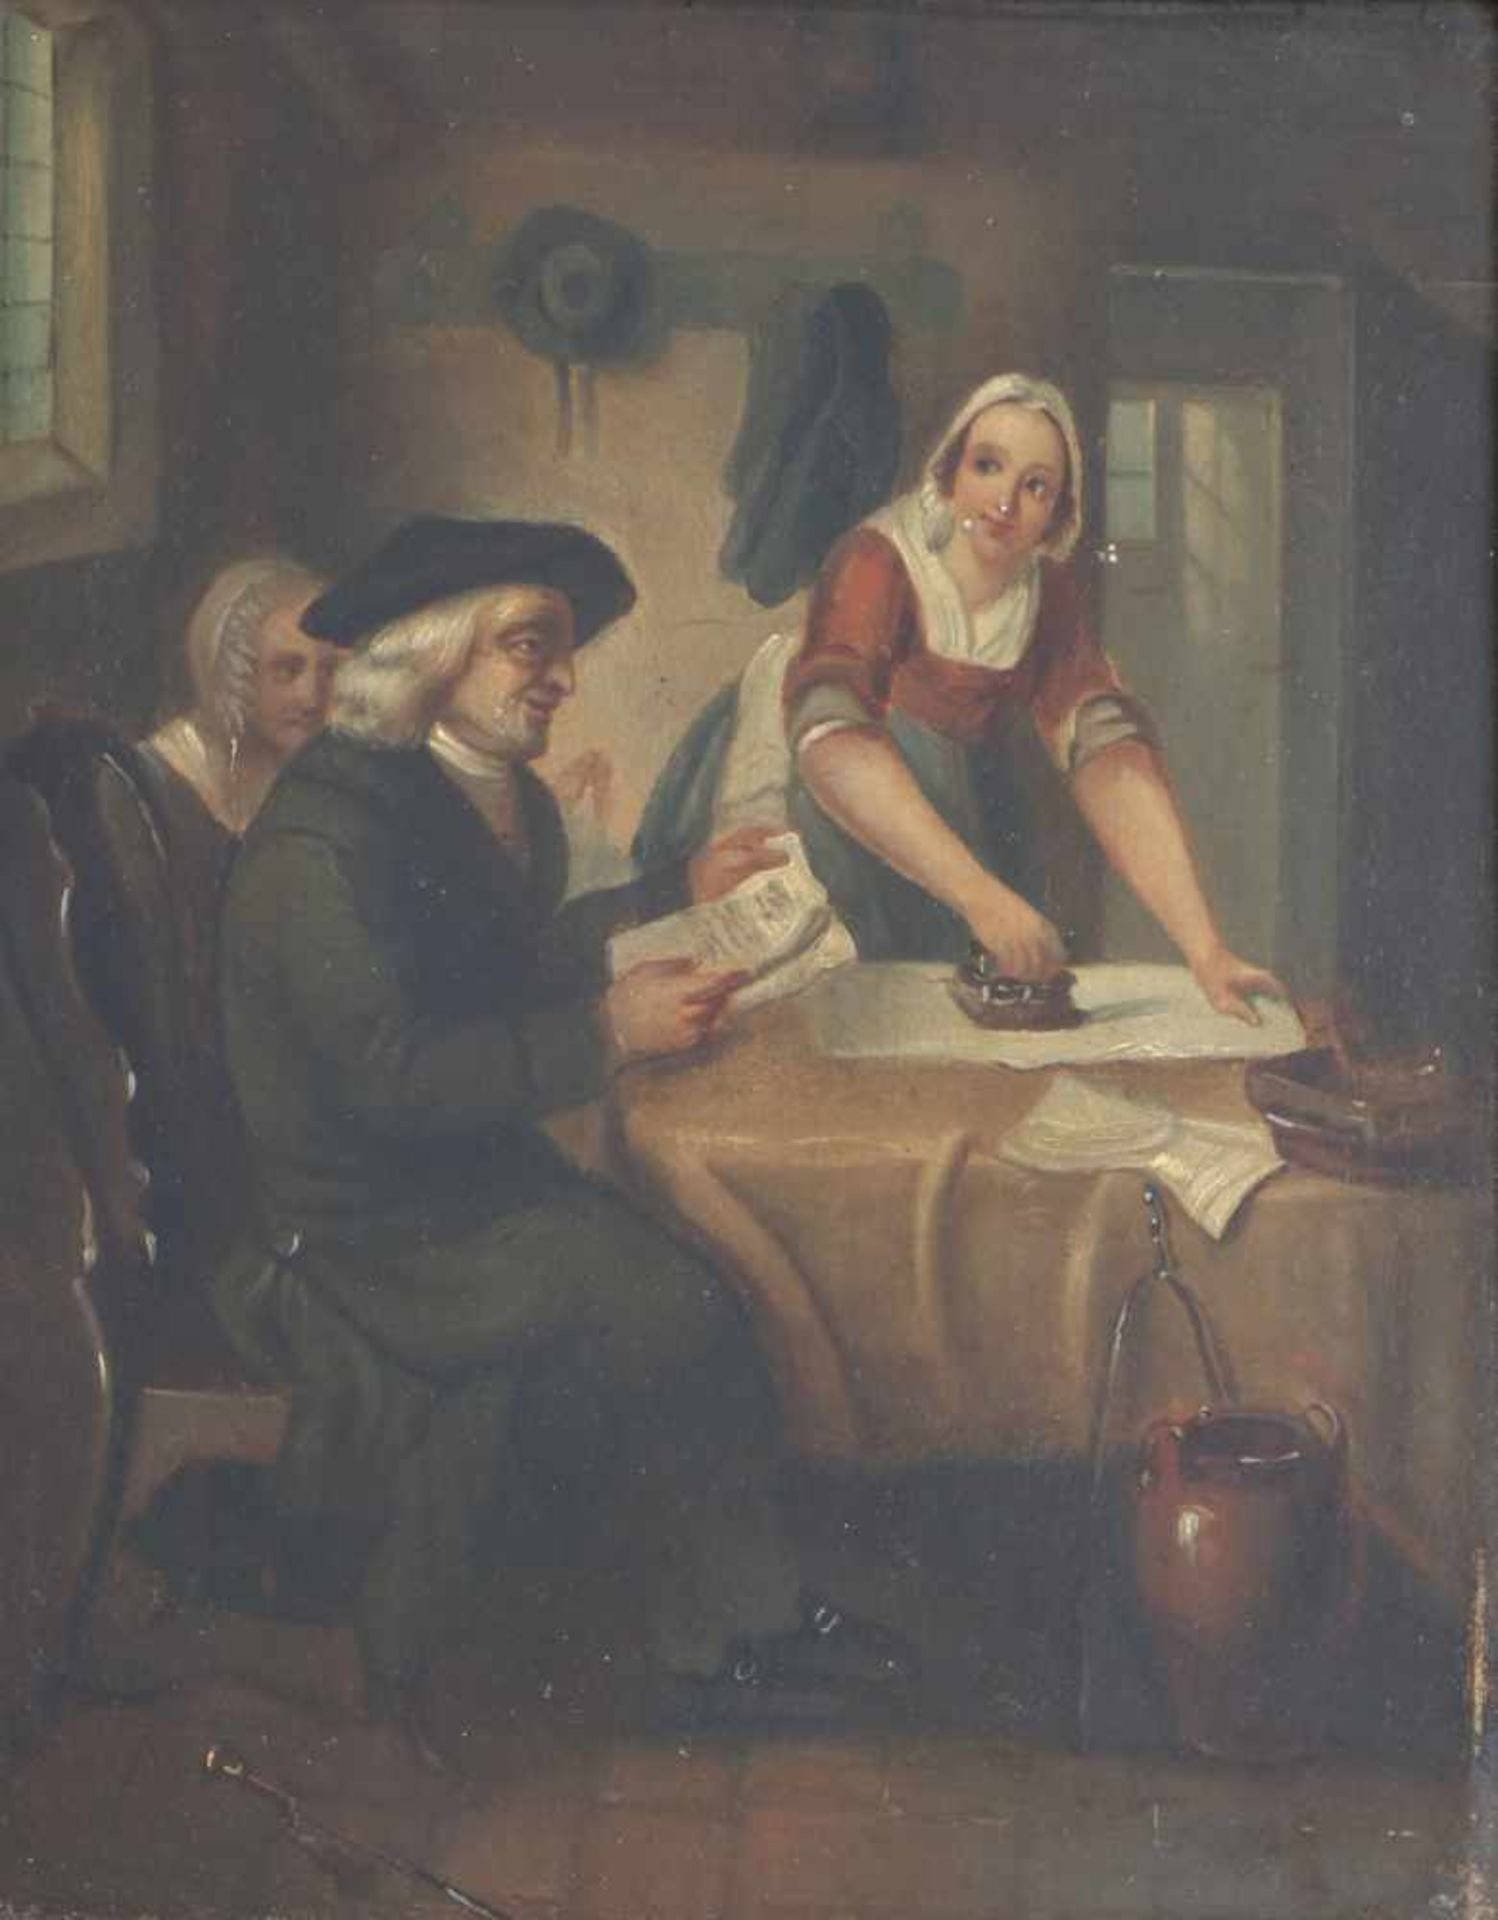 Hollandse School, 19e eeuw.Bezoek van de notaris. Olieverf op paneel. Onduidelijk gesigneerd